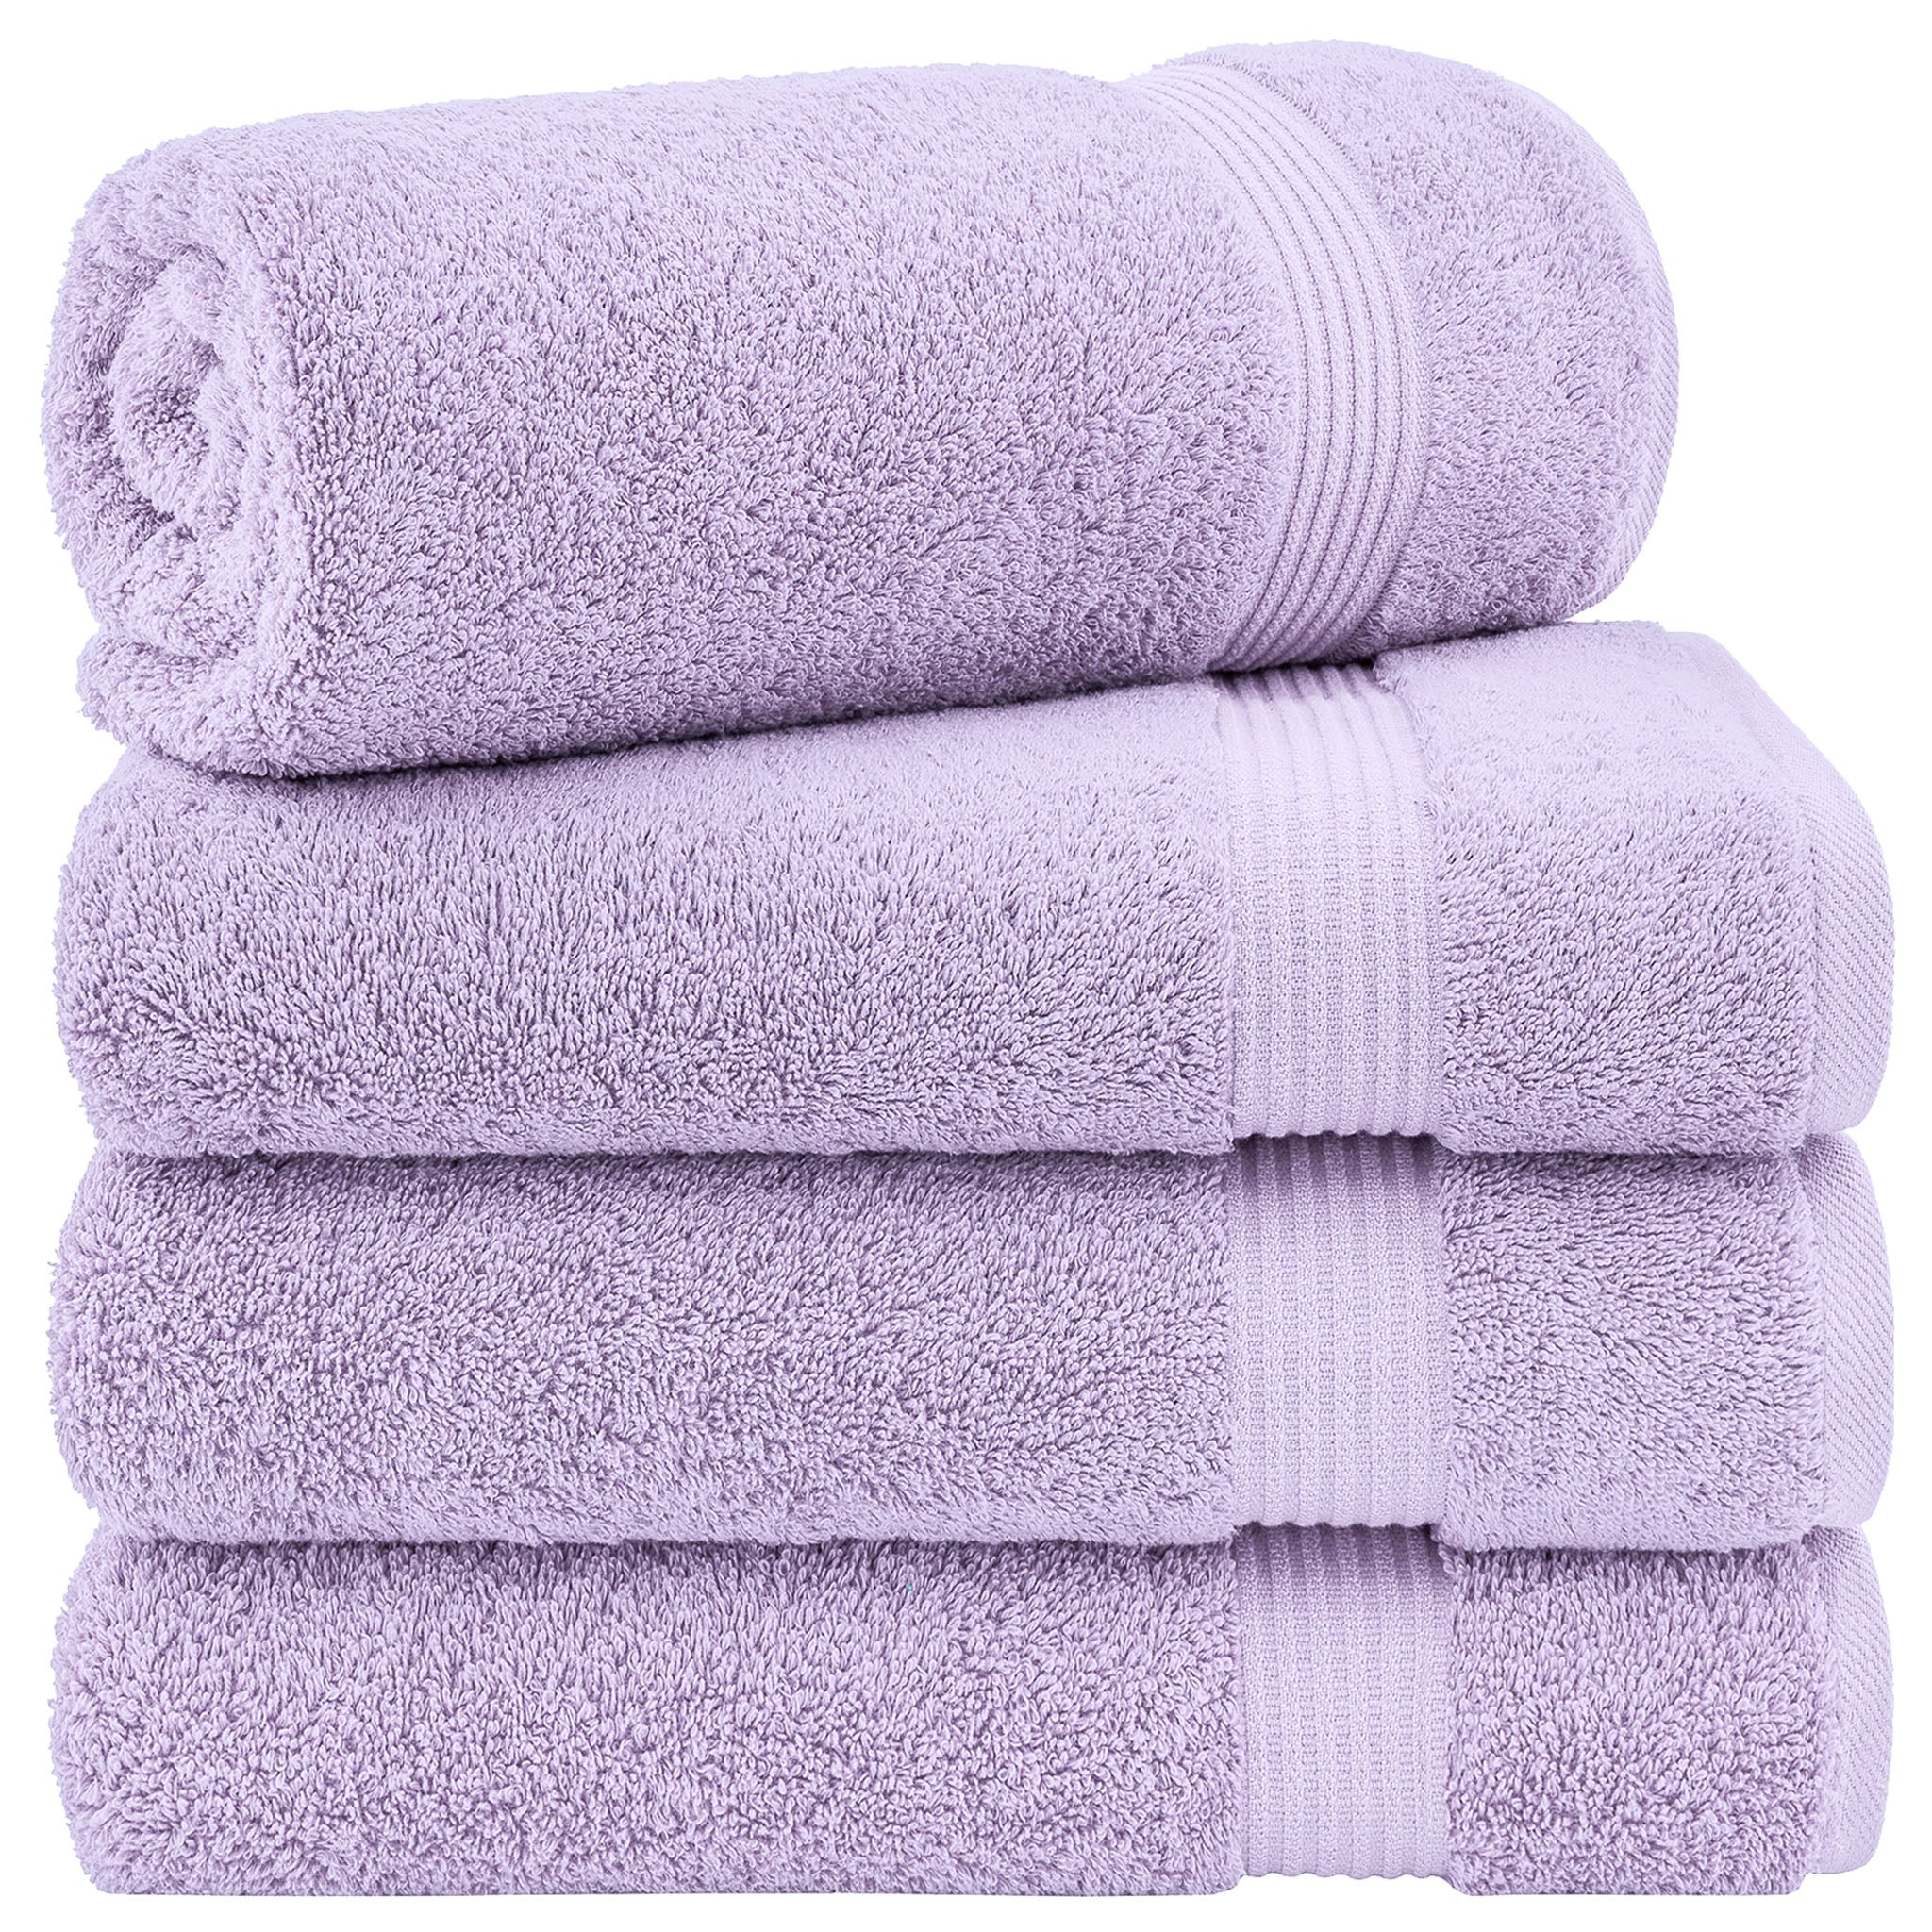 American Soft Linen Bekos 100% Cotton Turkish Towels, 4 Piece Bath Towel Set -lilac-01